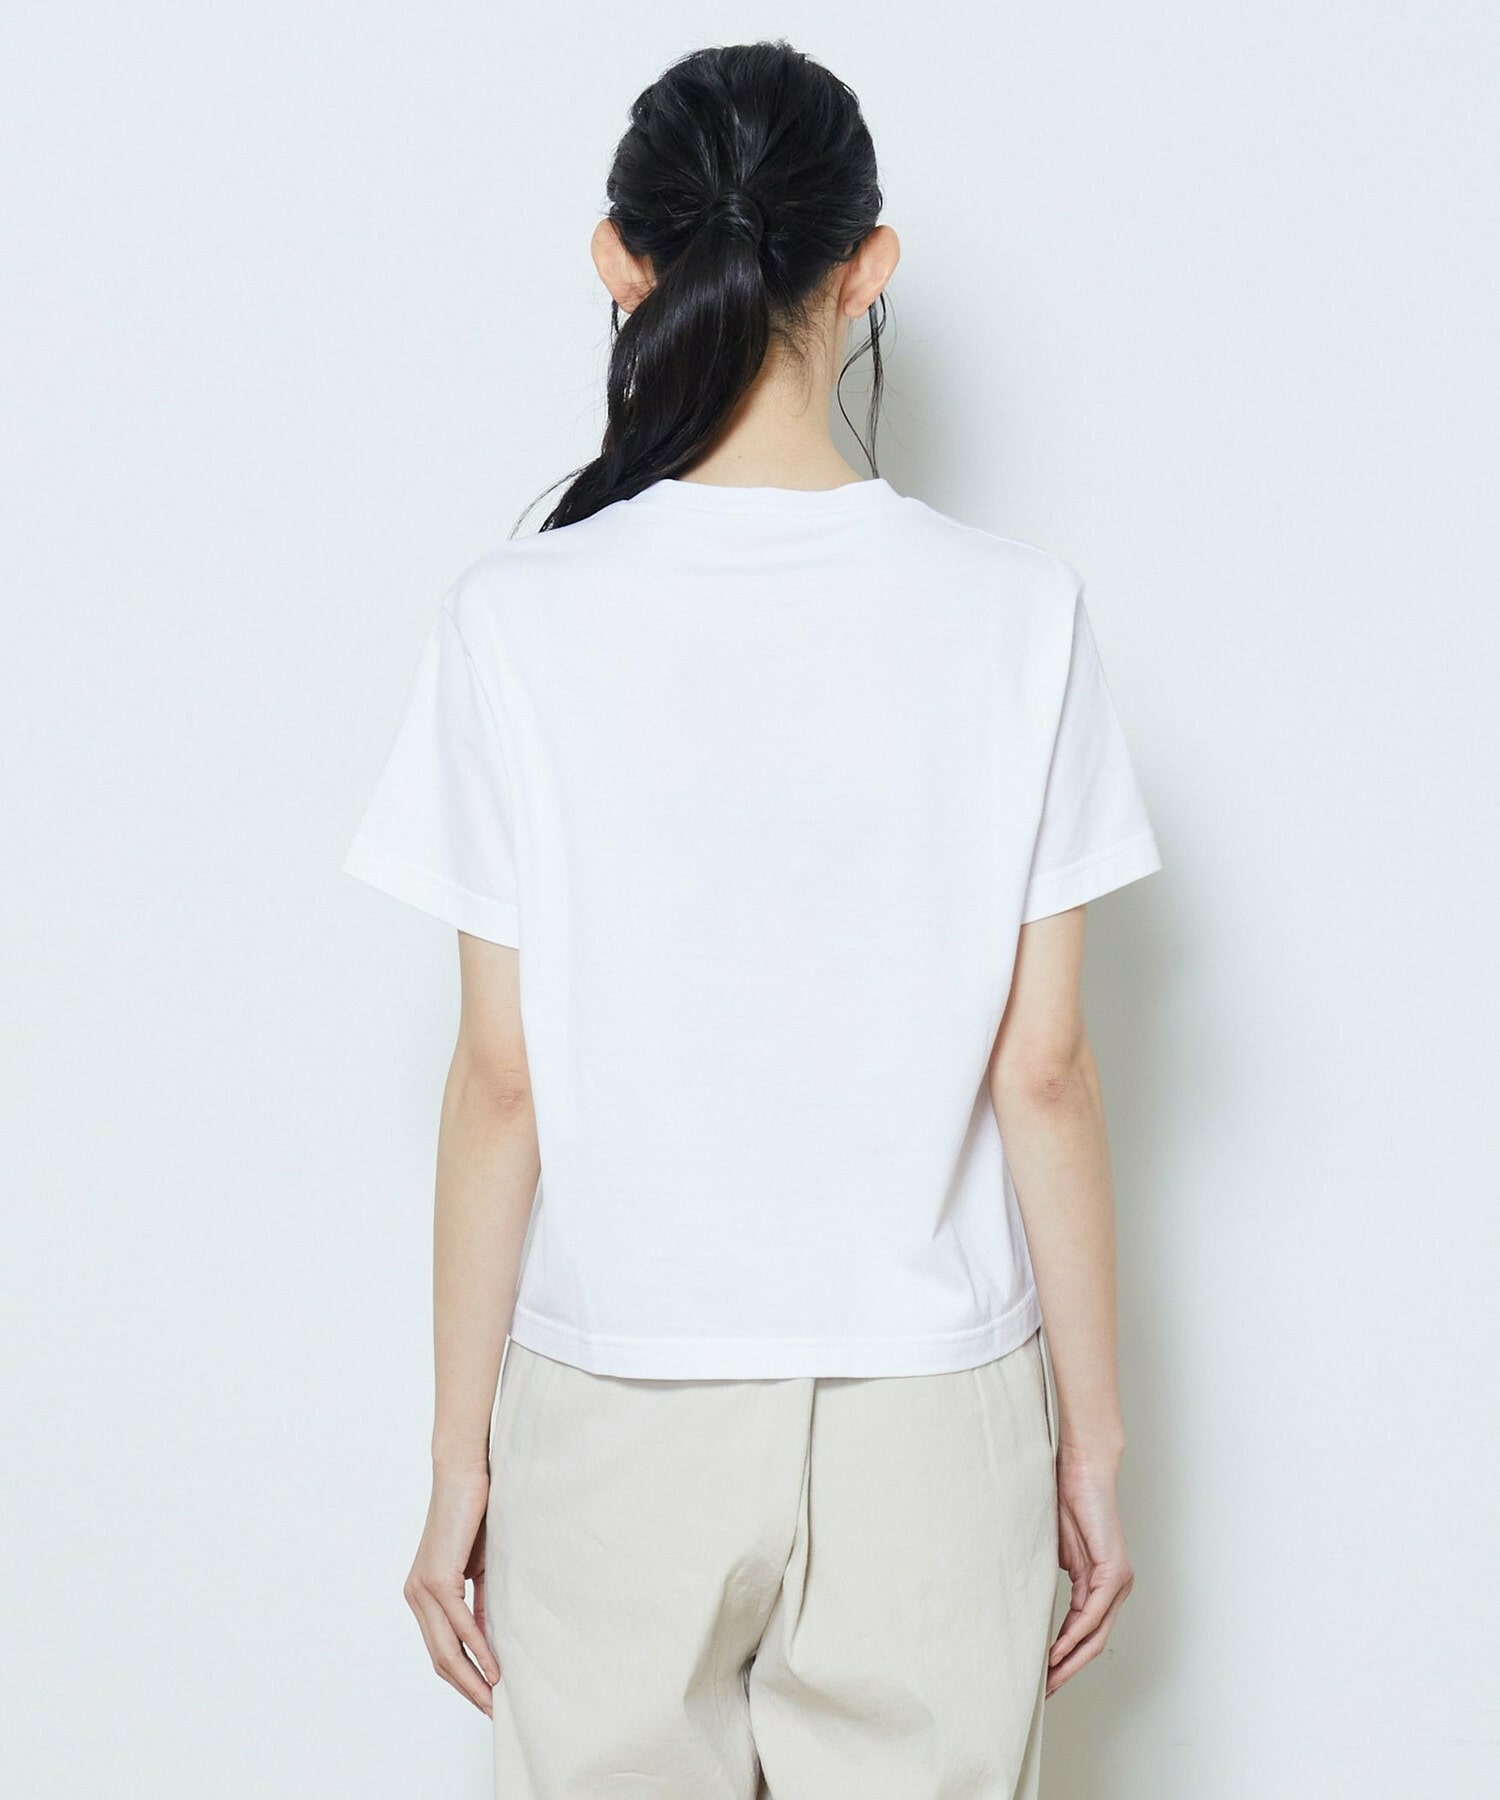 【L'EQUIPE】【Lサイズ】かすれロゴプリントTシャツ 詳細画像 ホワイト×レッド 8